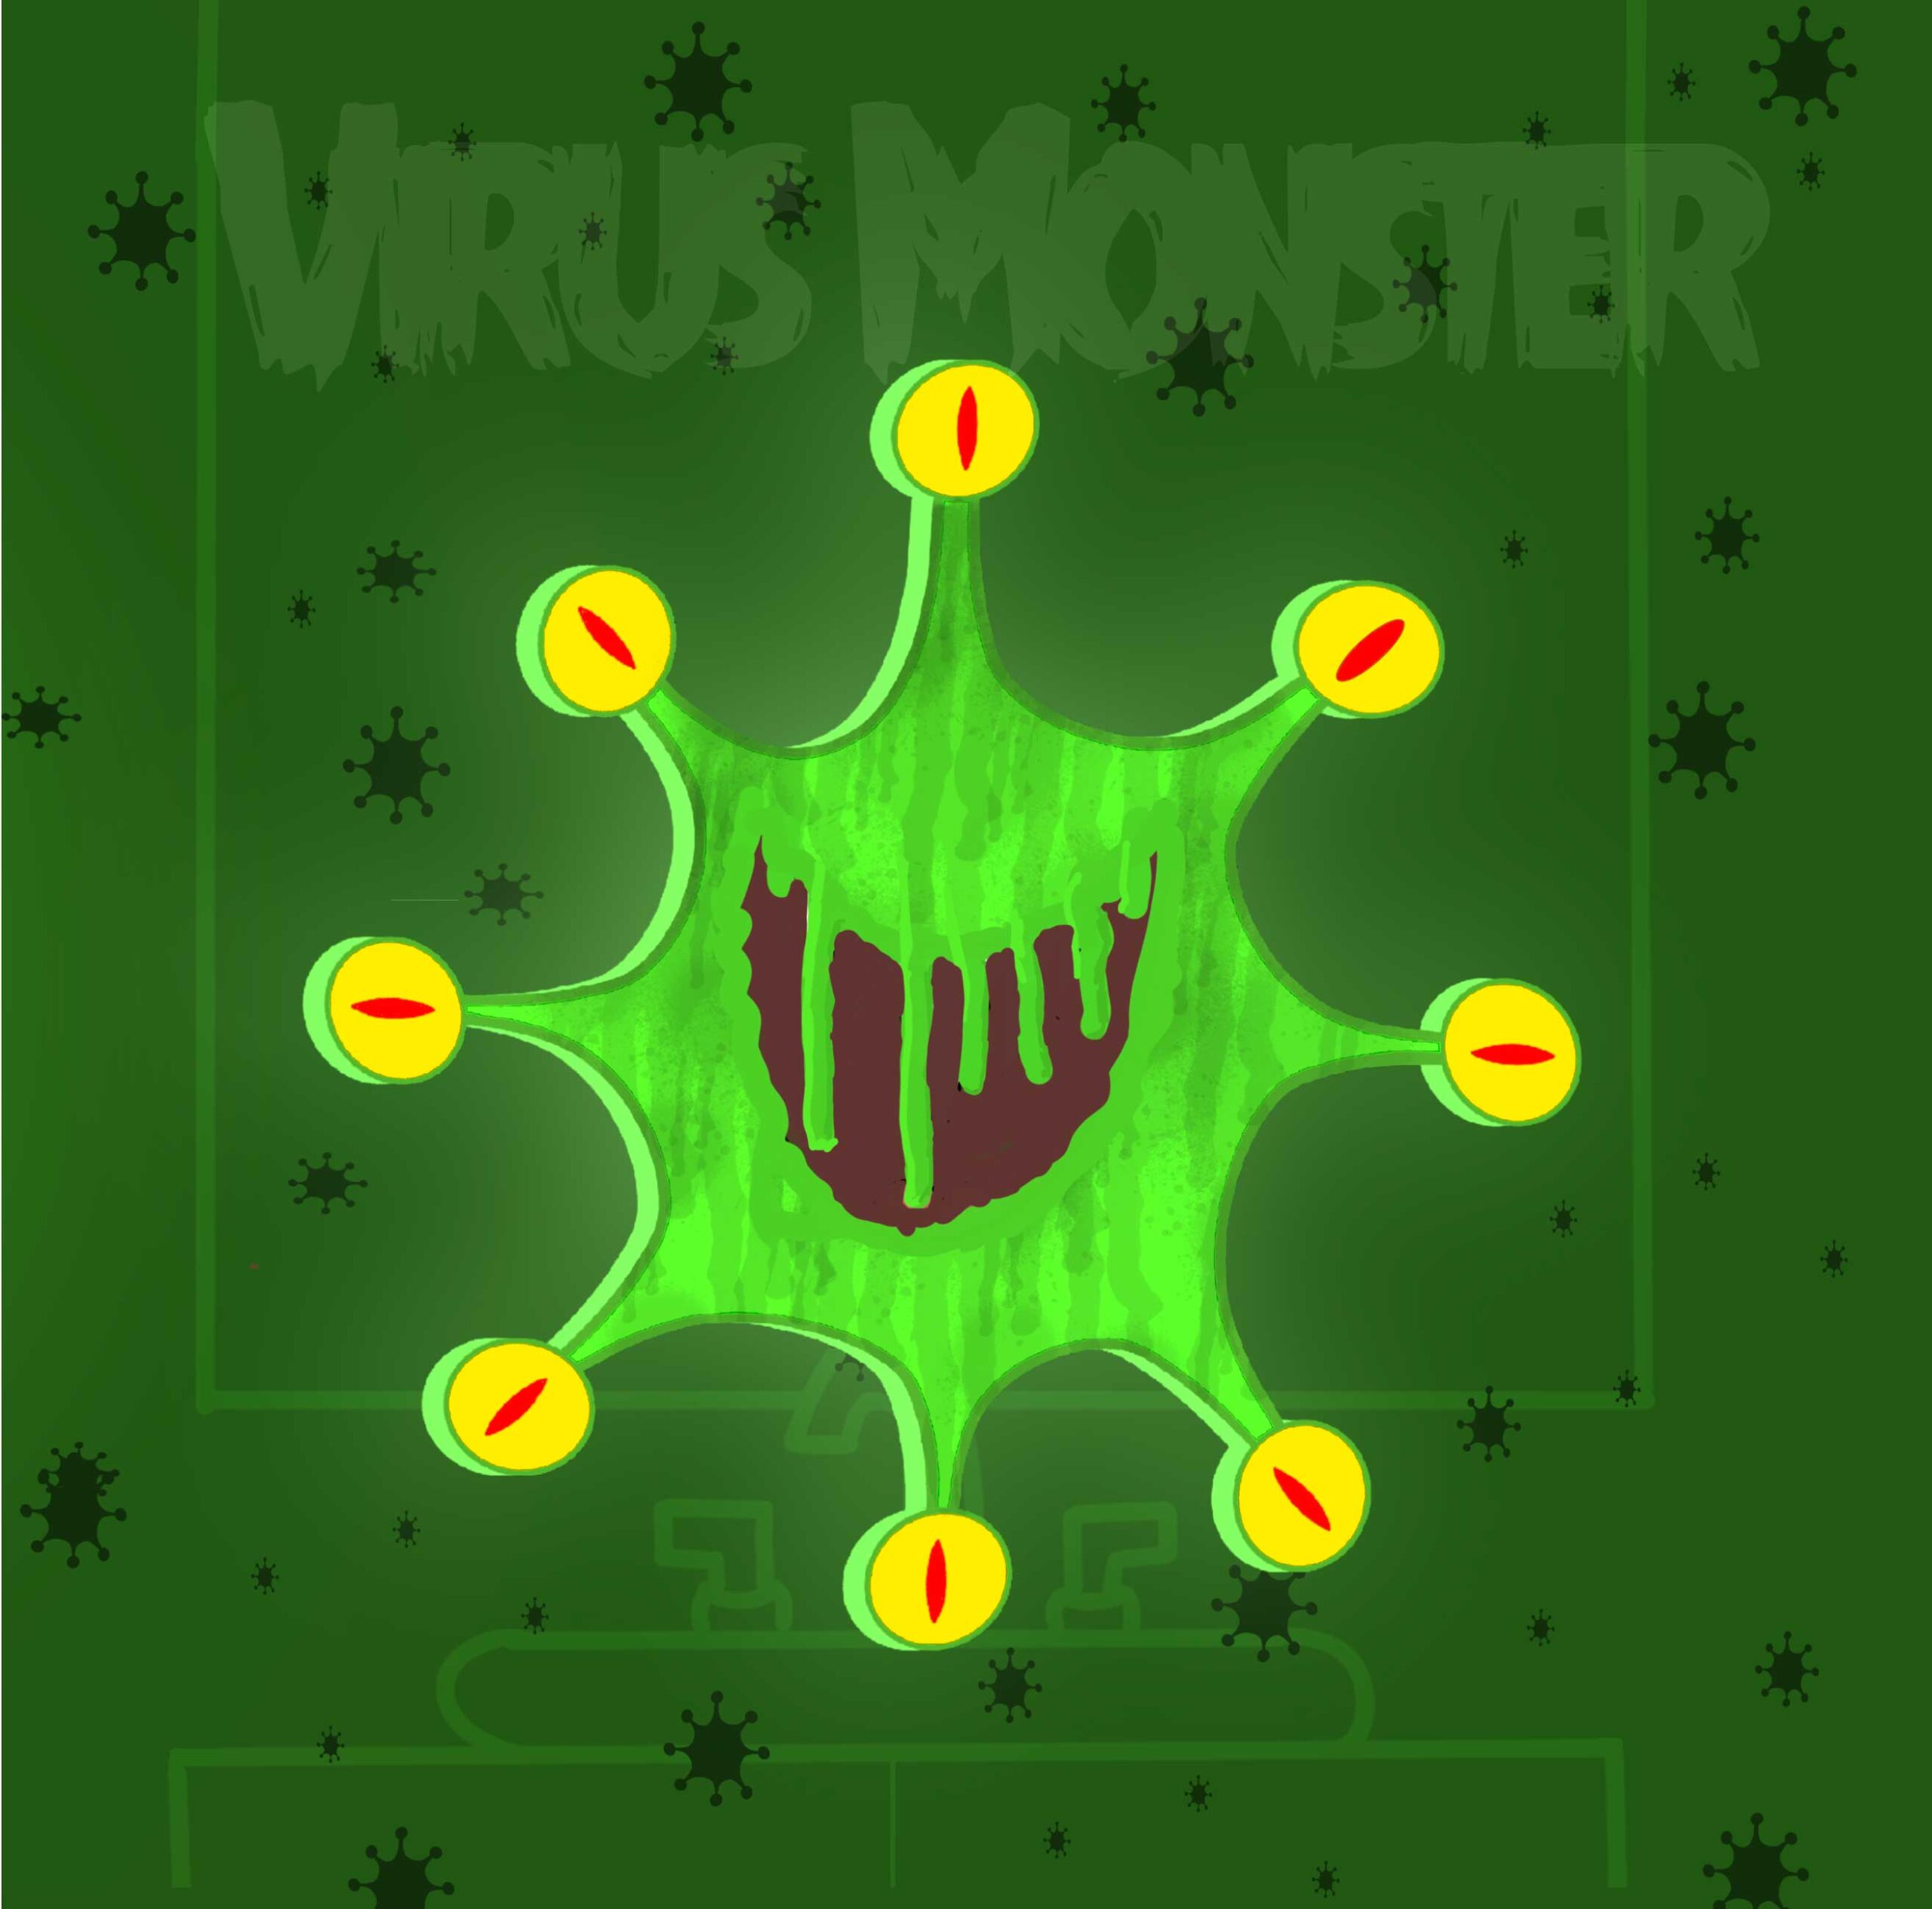 The Virus Monster